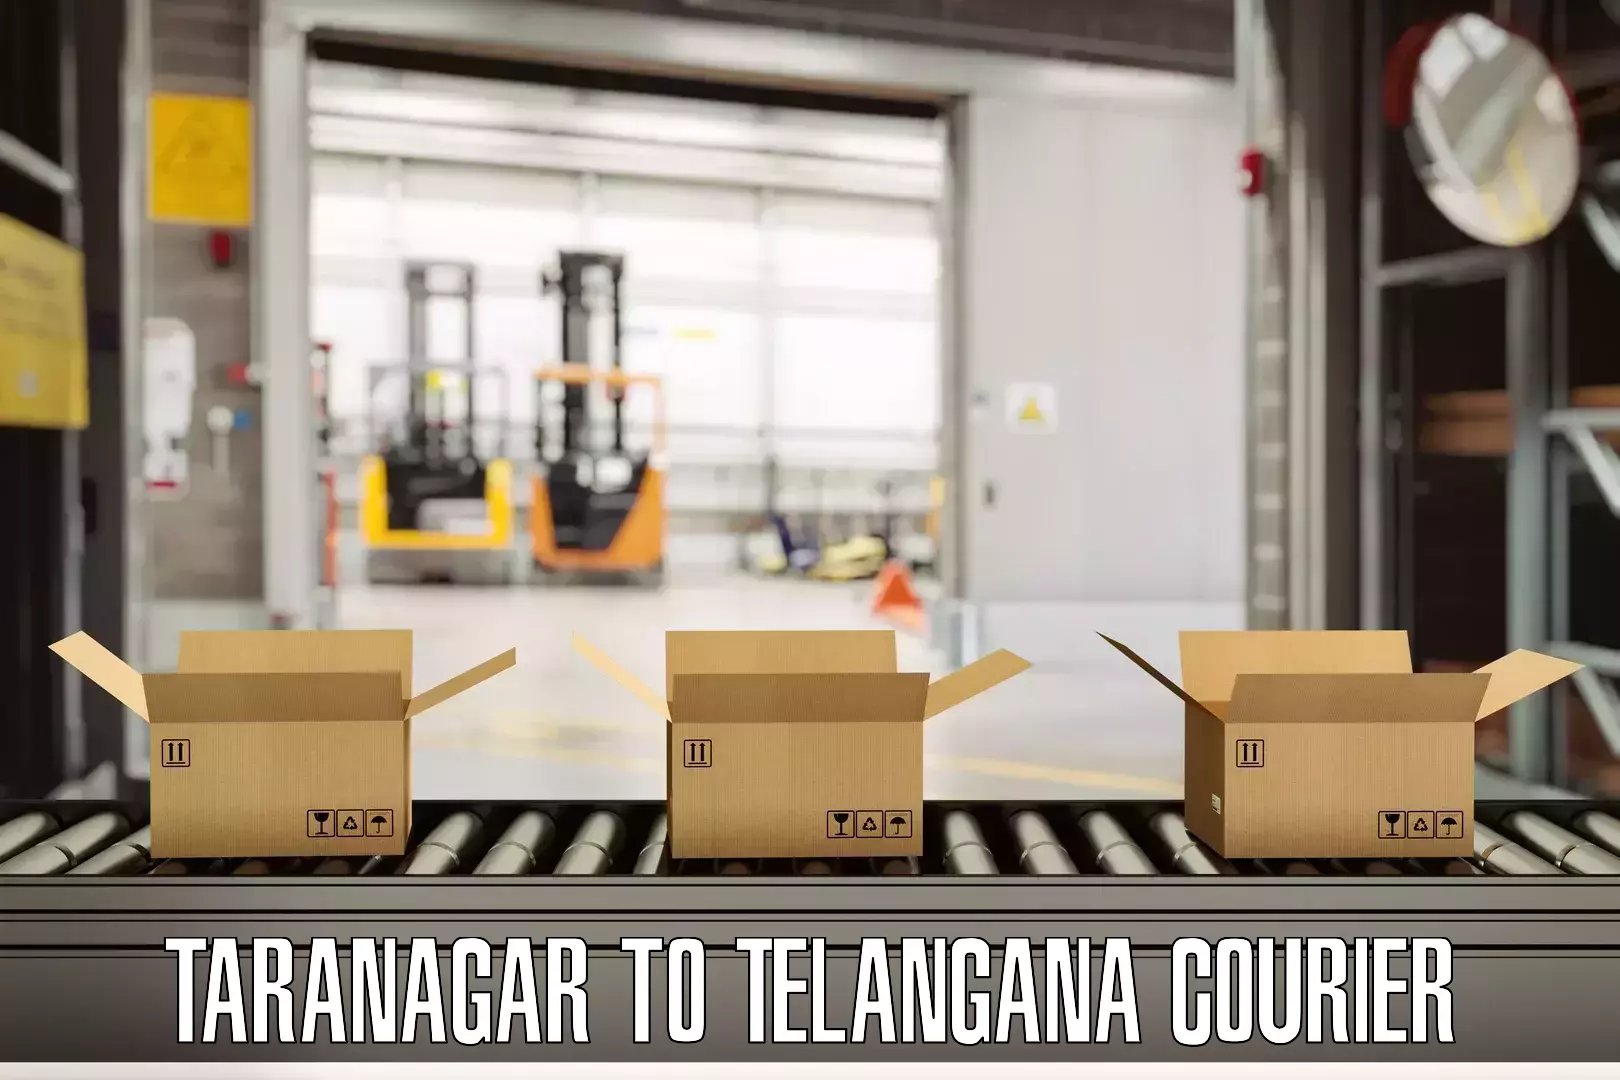 Baggage transport cost Taranagar to Yellareddipet